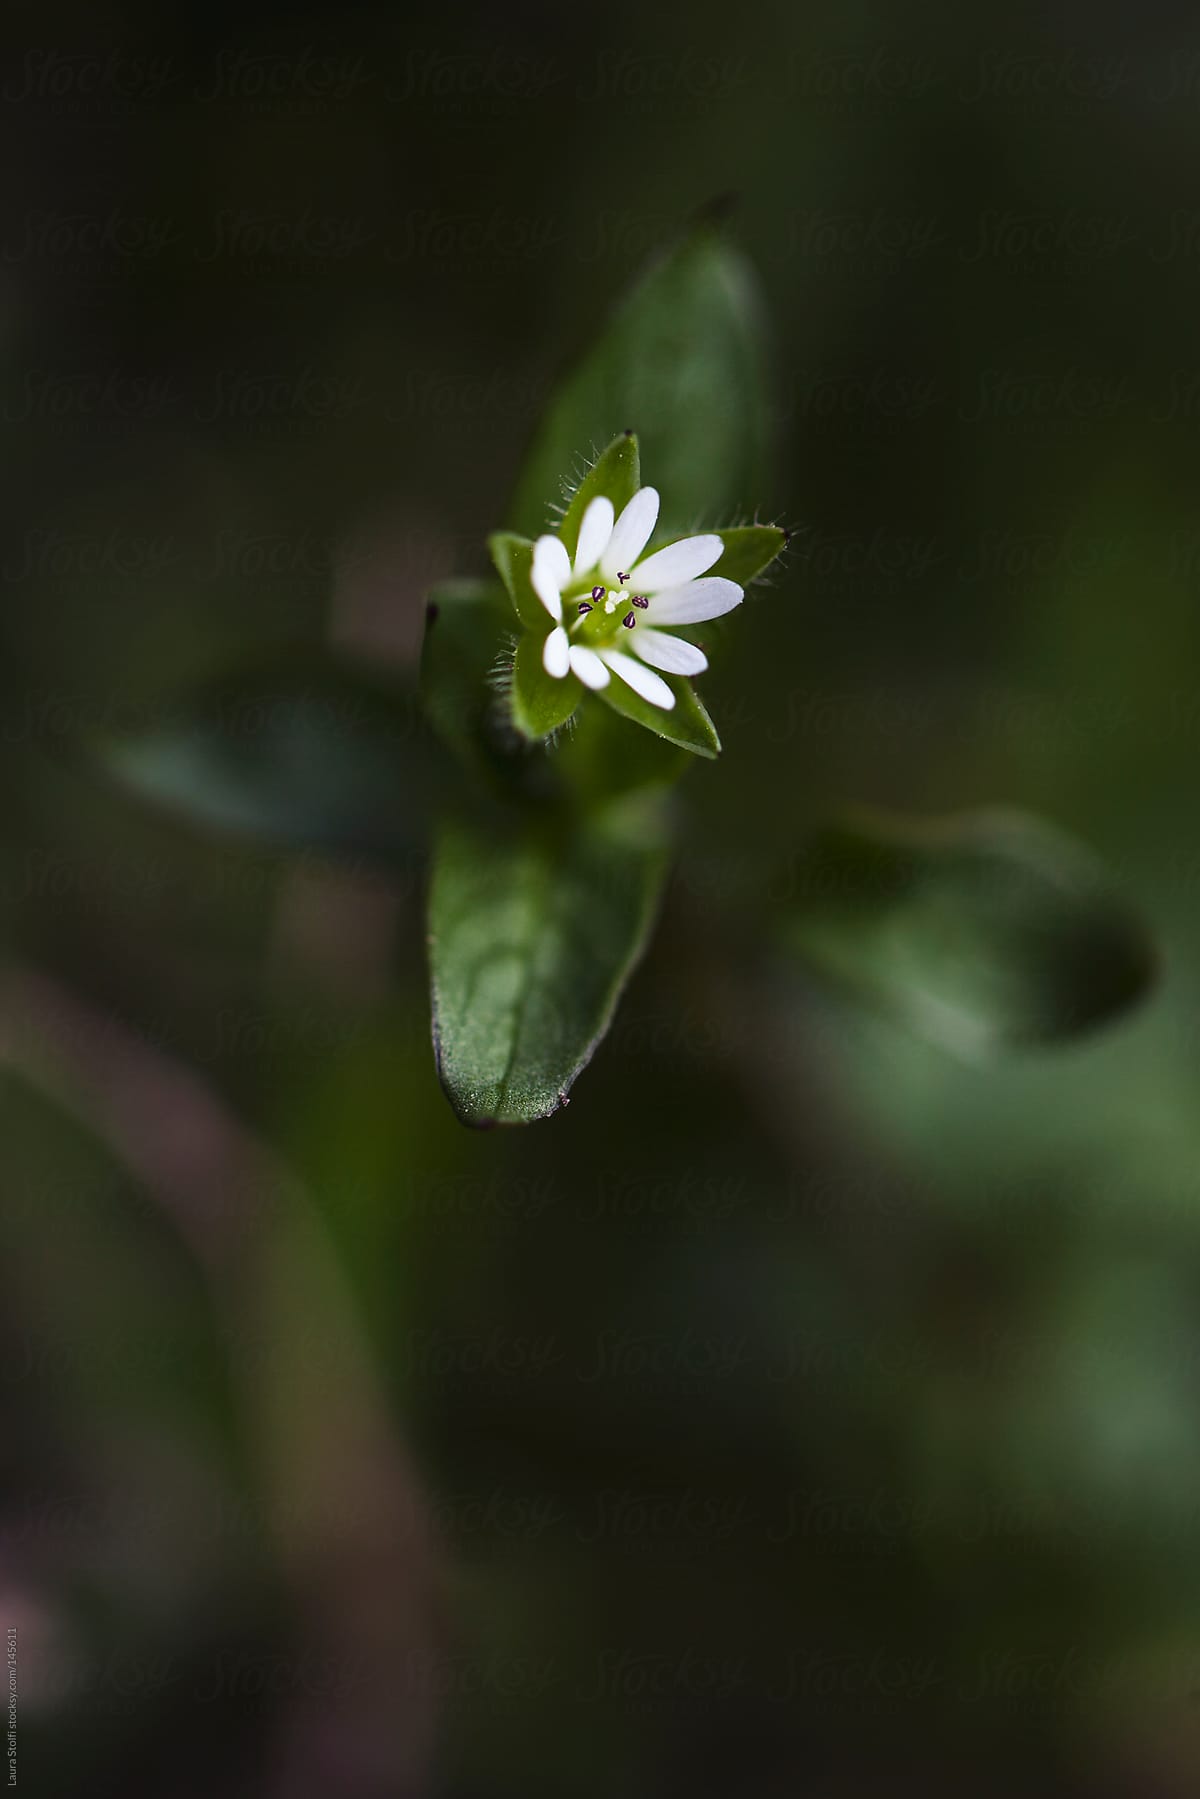 Tiny wildflower in garden lawn